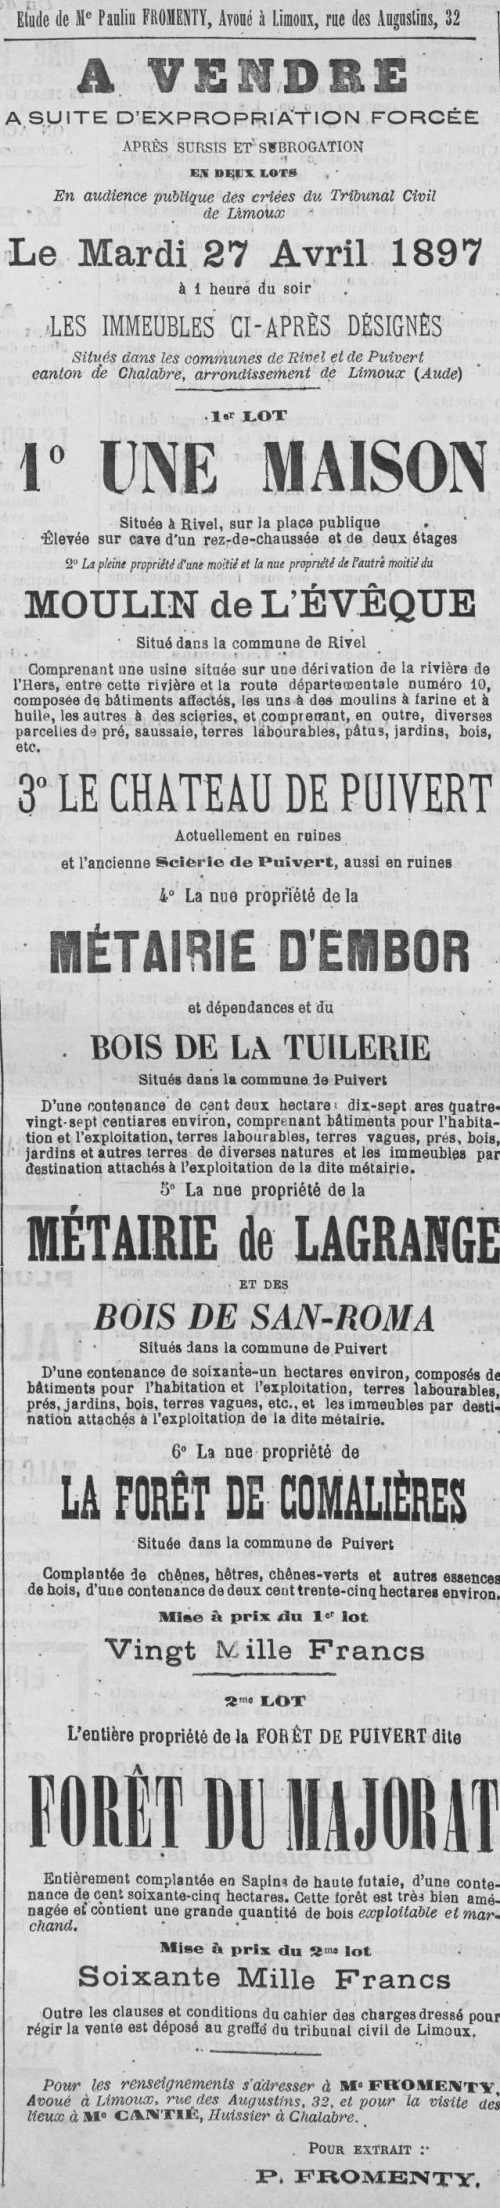 1897 Le Courrier de l'Aude 31 mars.jpg